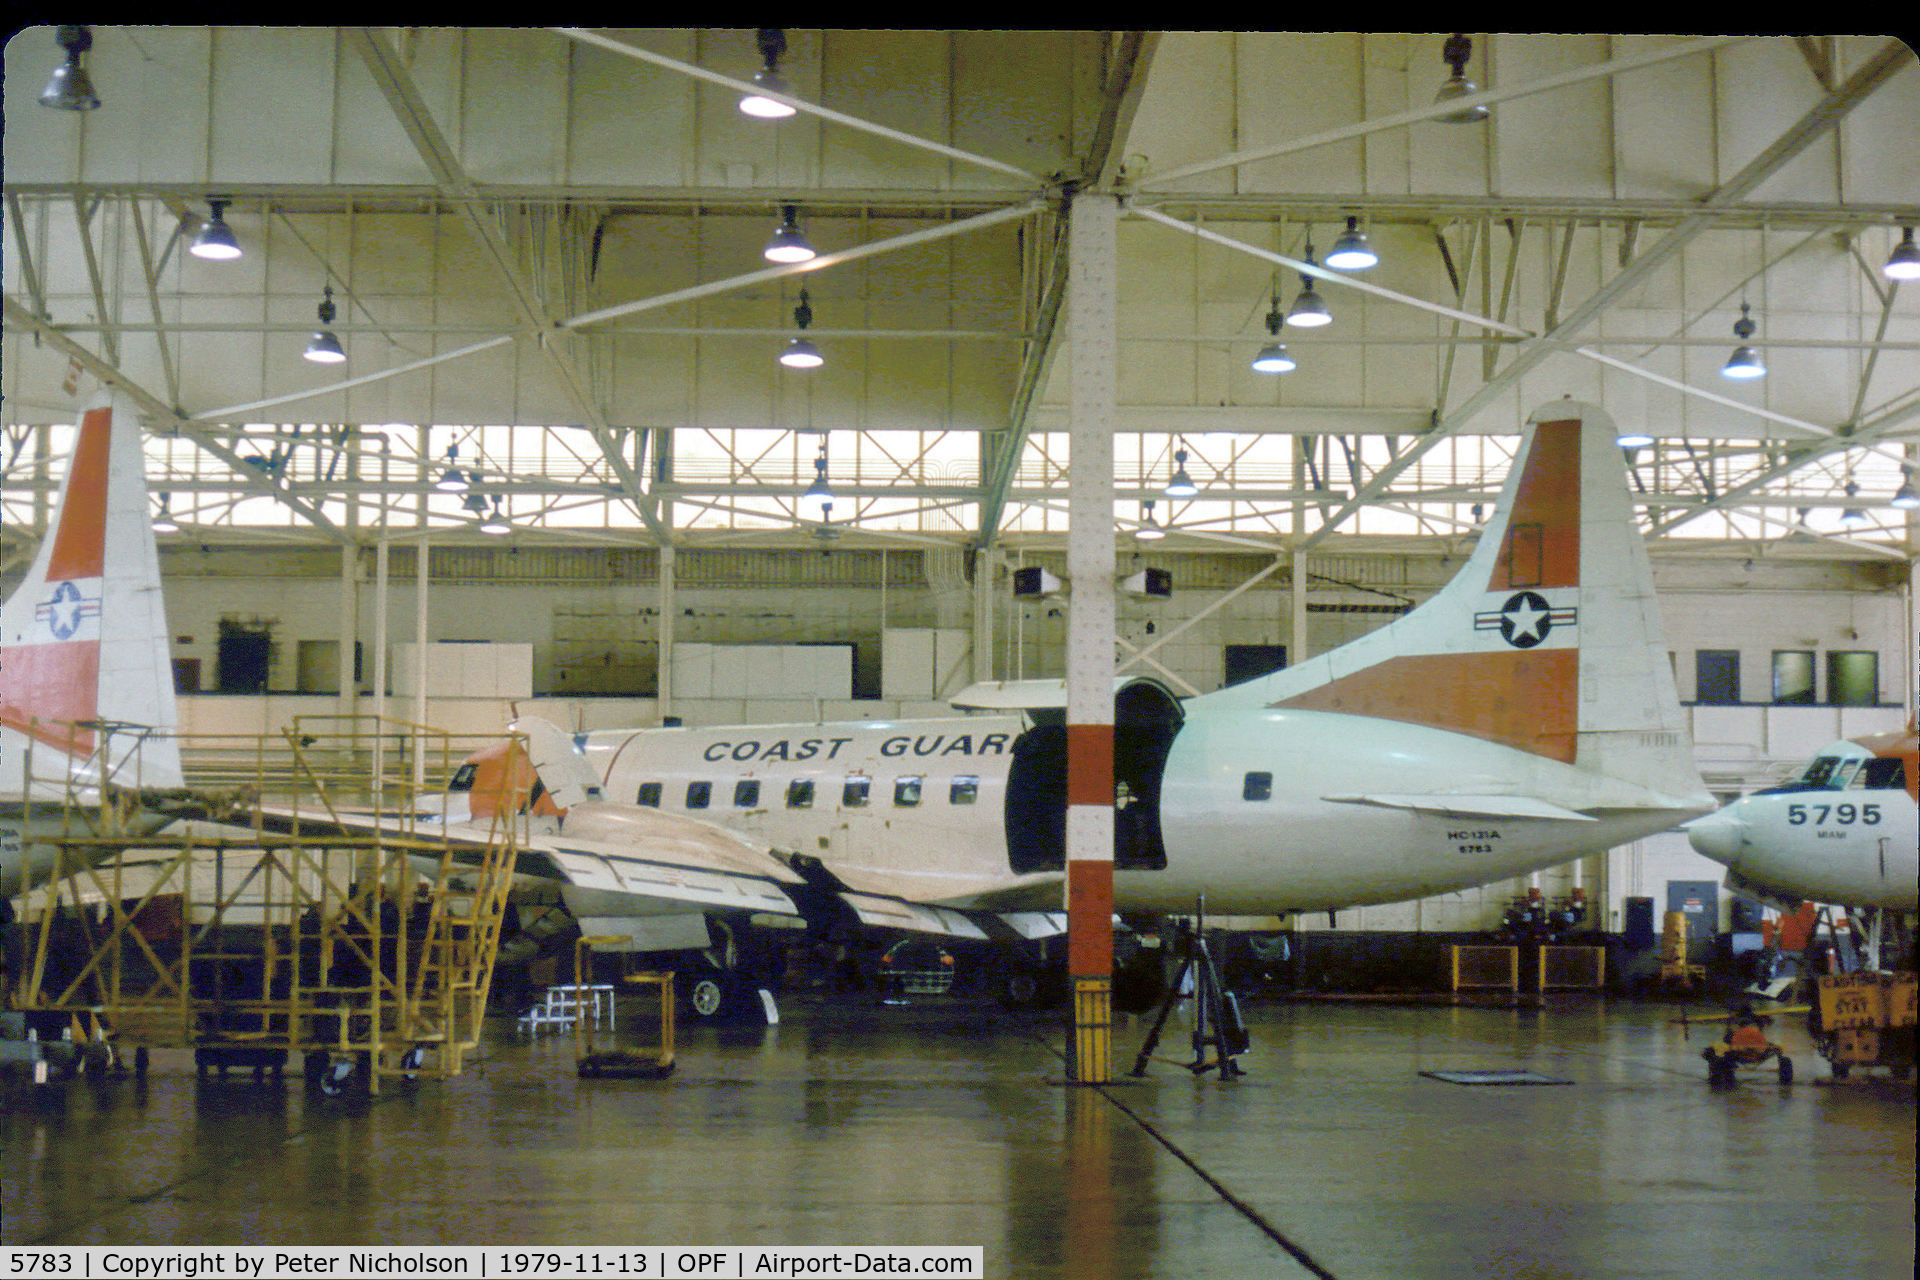 5783, 1952 Convair HC-131A (C-131A) Samaritan C/N 53-3, United States Coast Guard service HC-131A Samaritan as seen at Opa-Locka in November 1979.